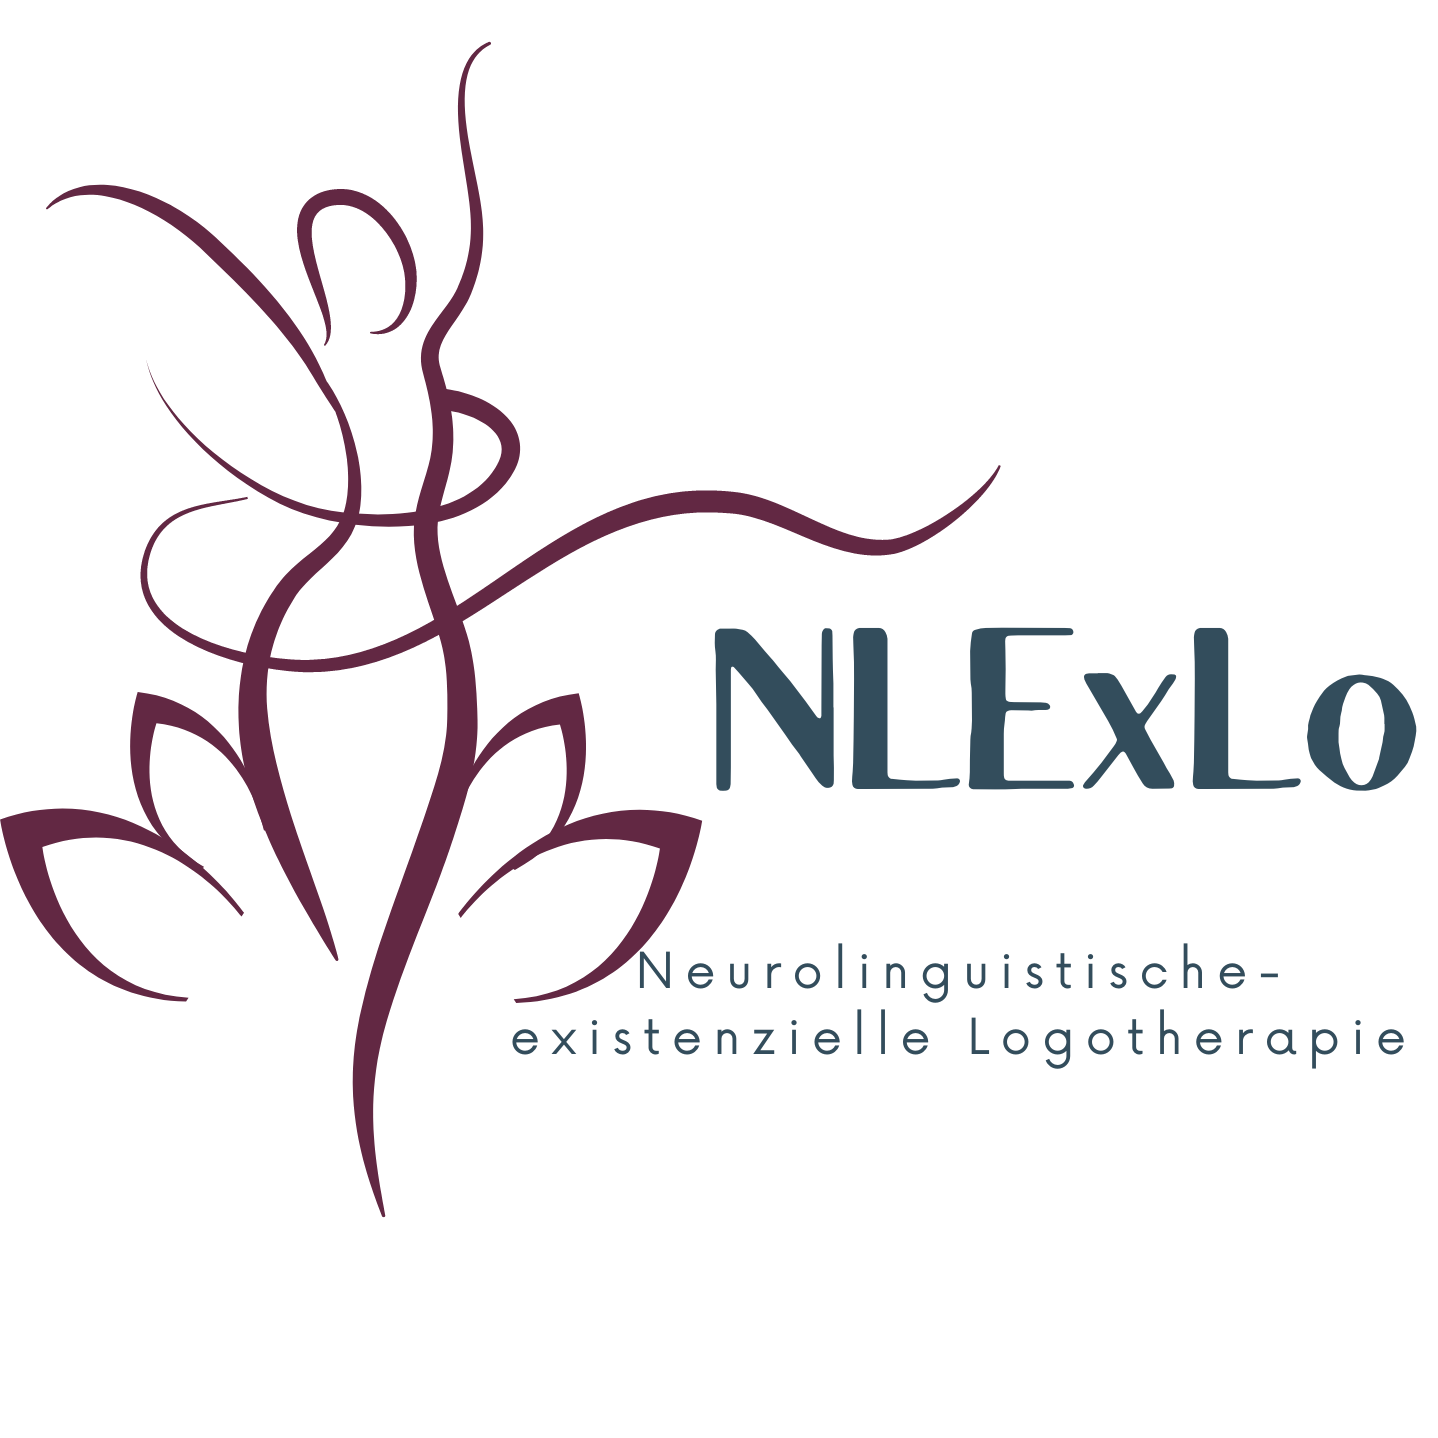 NLExLo | Neurolinguistische-existenzielle Logotherapie